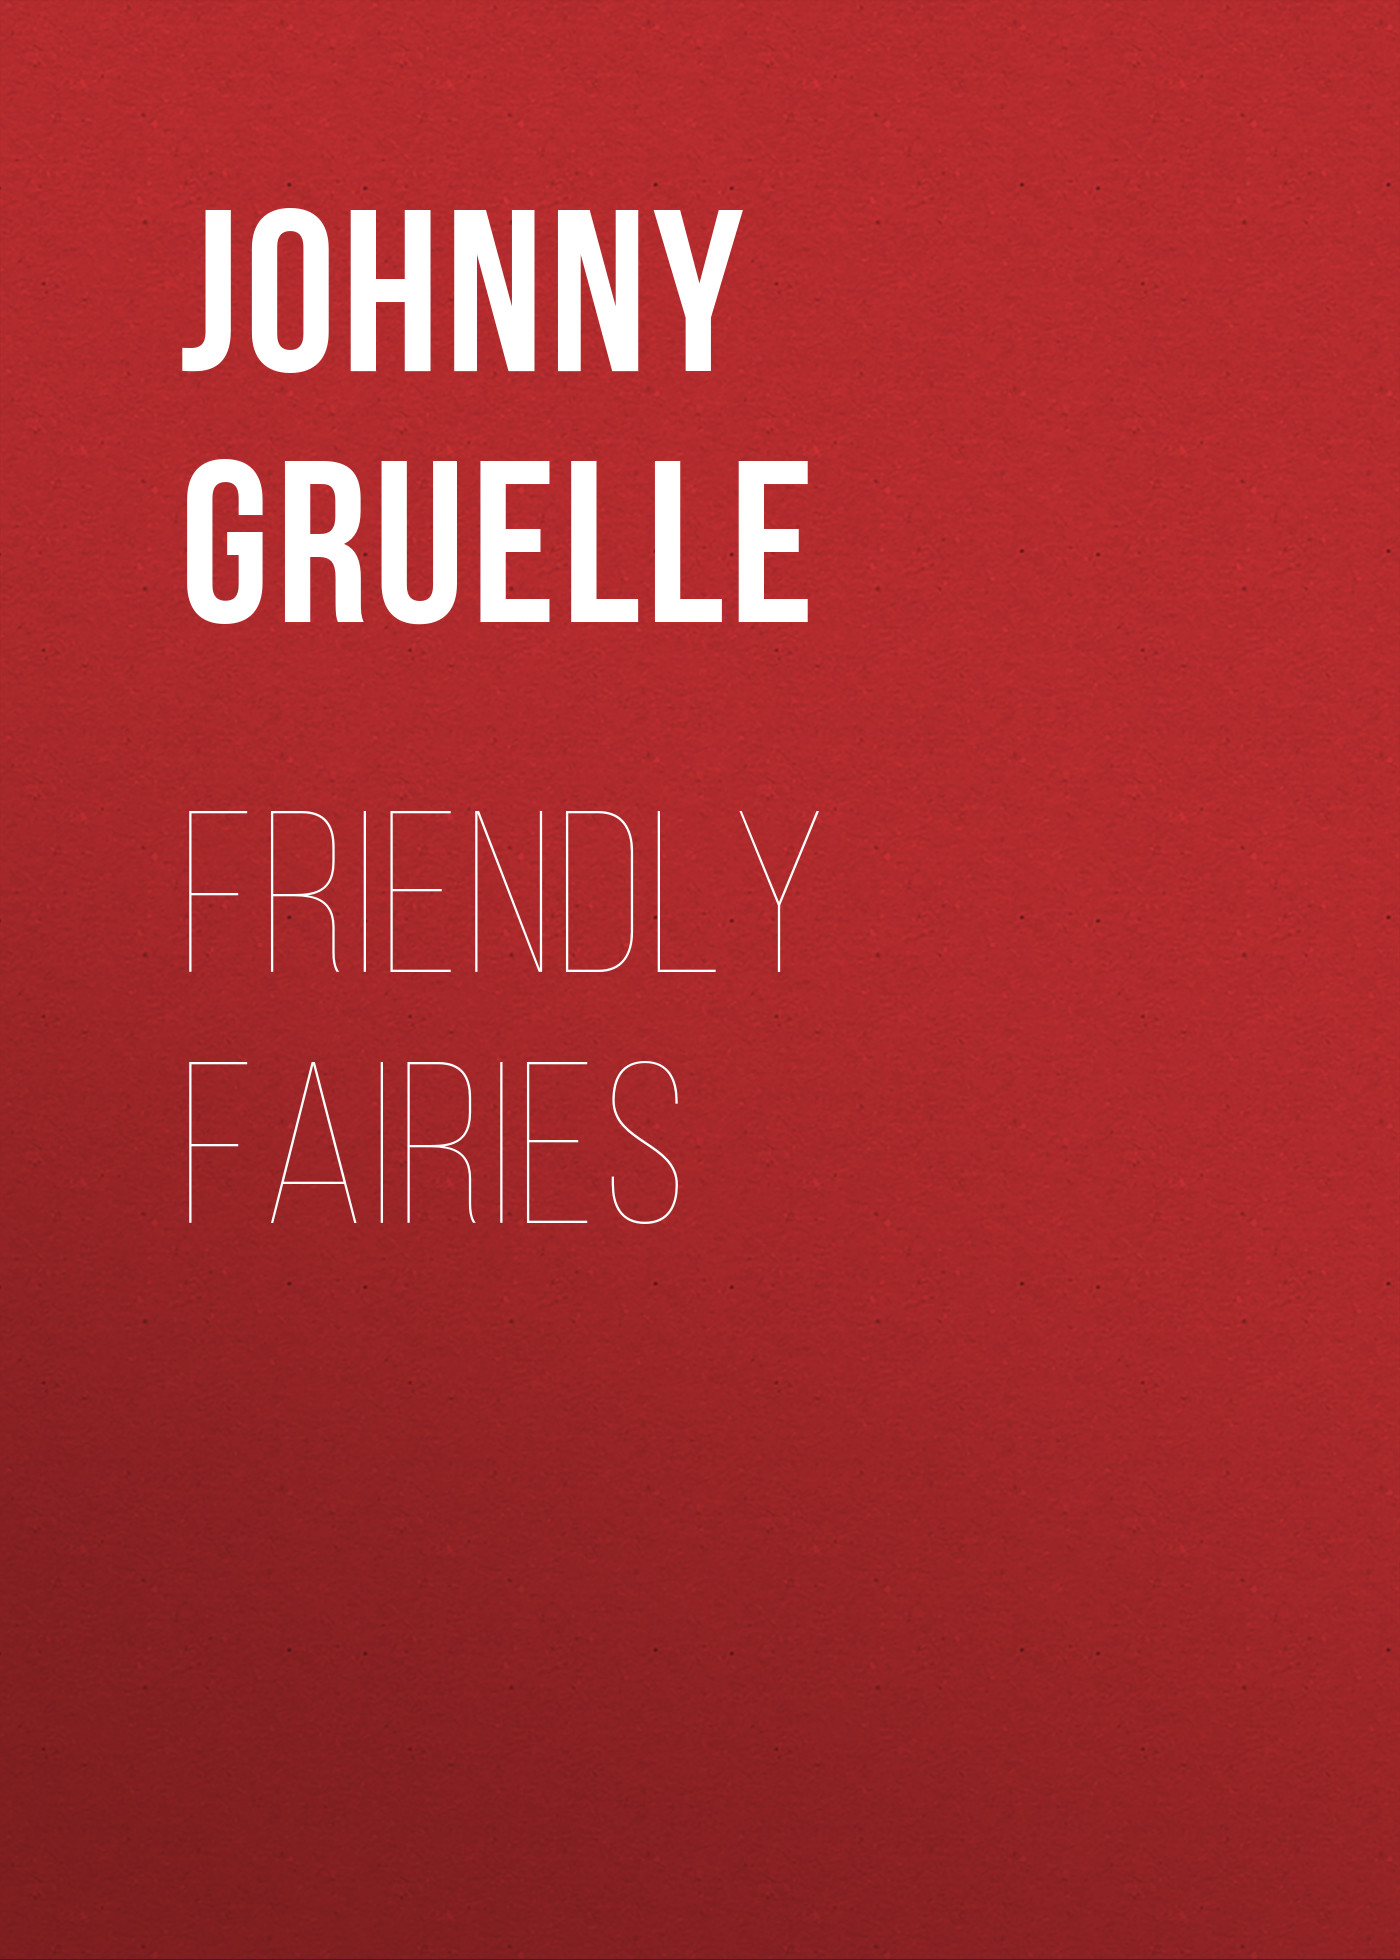 Книга Friendly Fairies из серии , созданная Johnny Gruelle, может относится к жанру Зарубежные детские книги, Зарубежная старинная литература, Зарубежная классика. Стоимость электронной книги Friendly Fairies с идентификатором 36366510 составляет 0 руб.